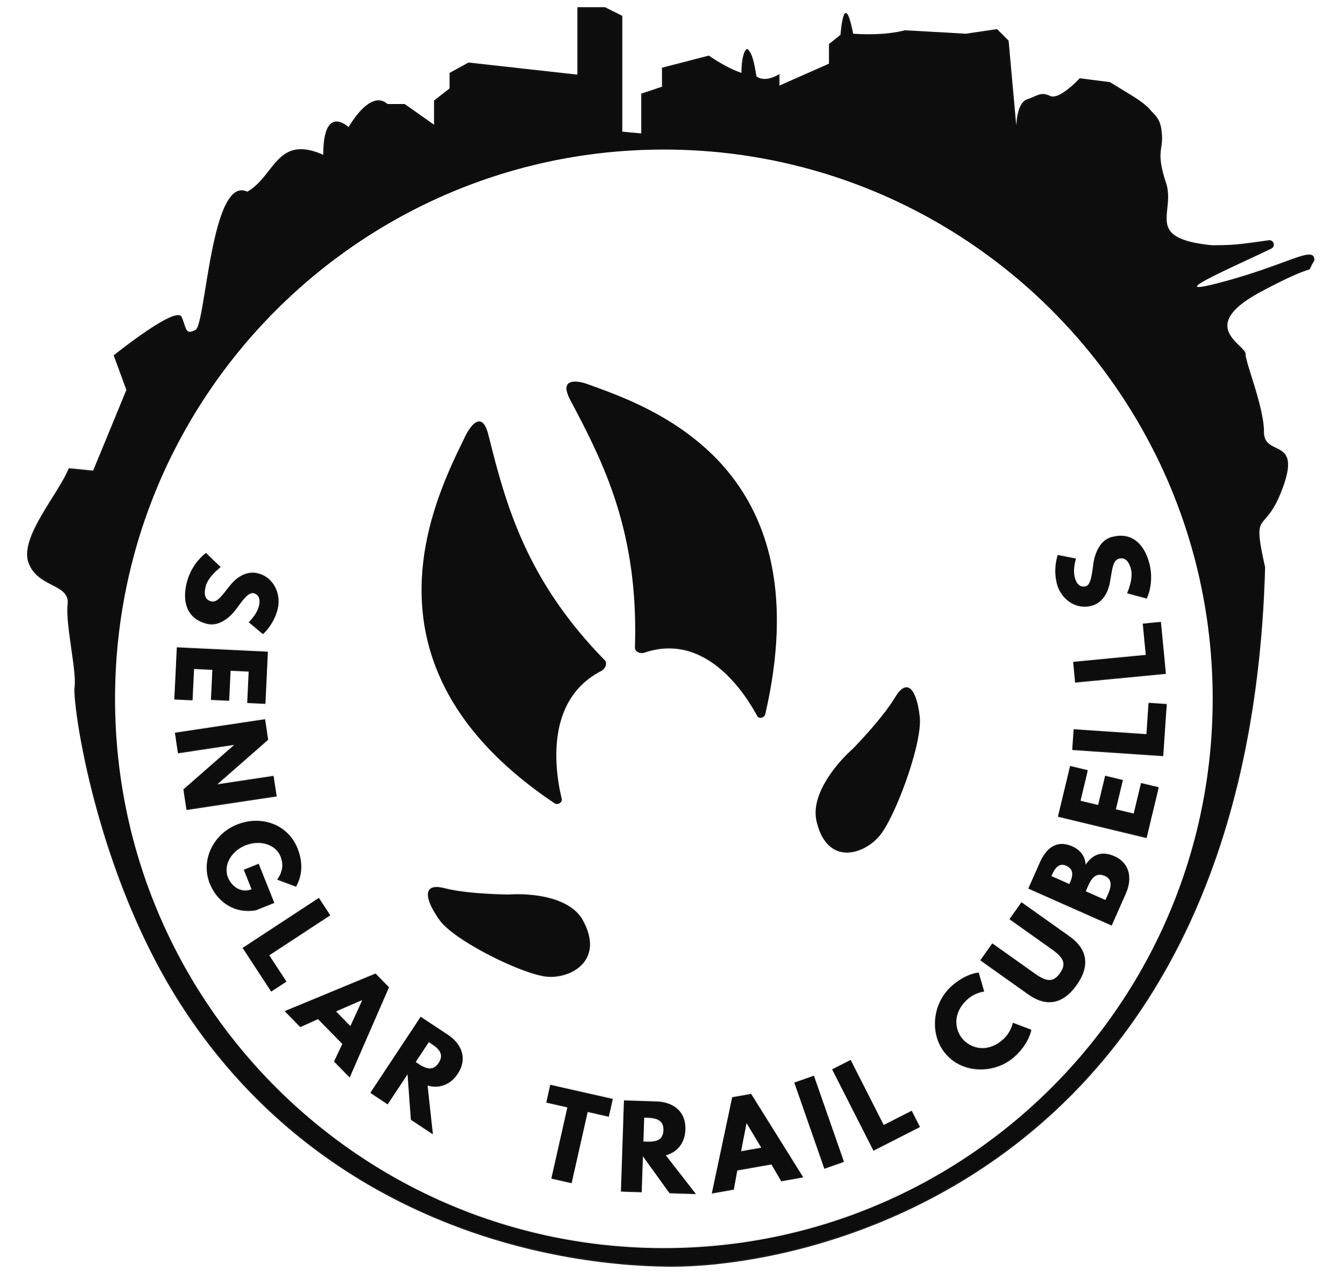 Senglar Trail Cubells